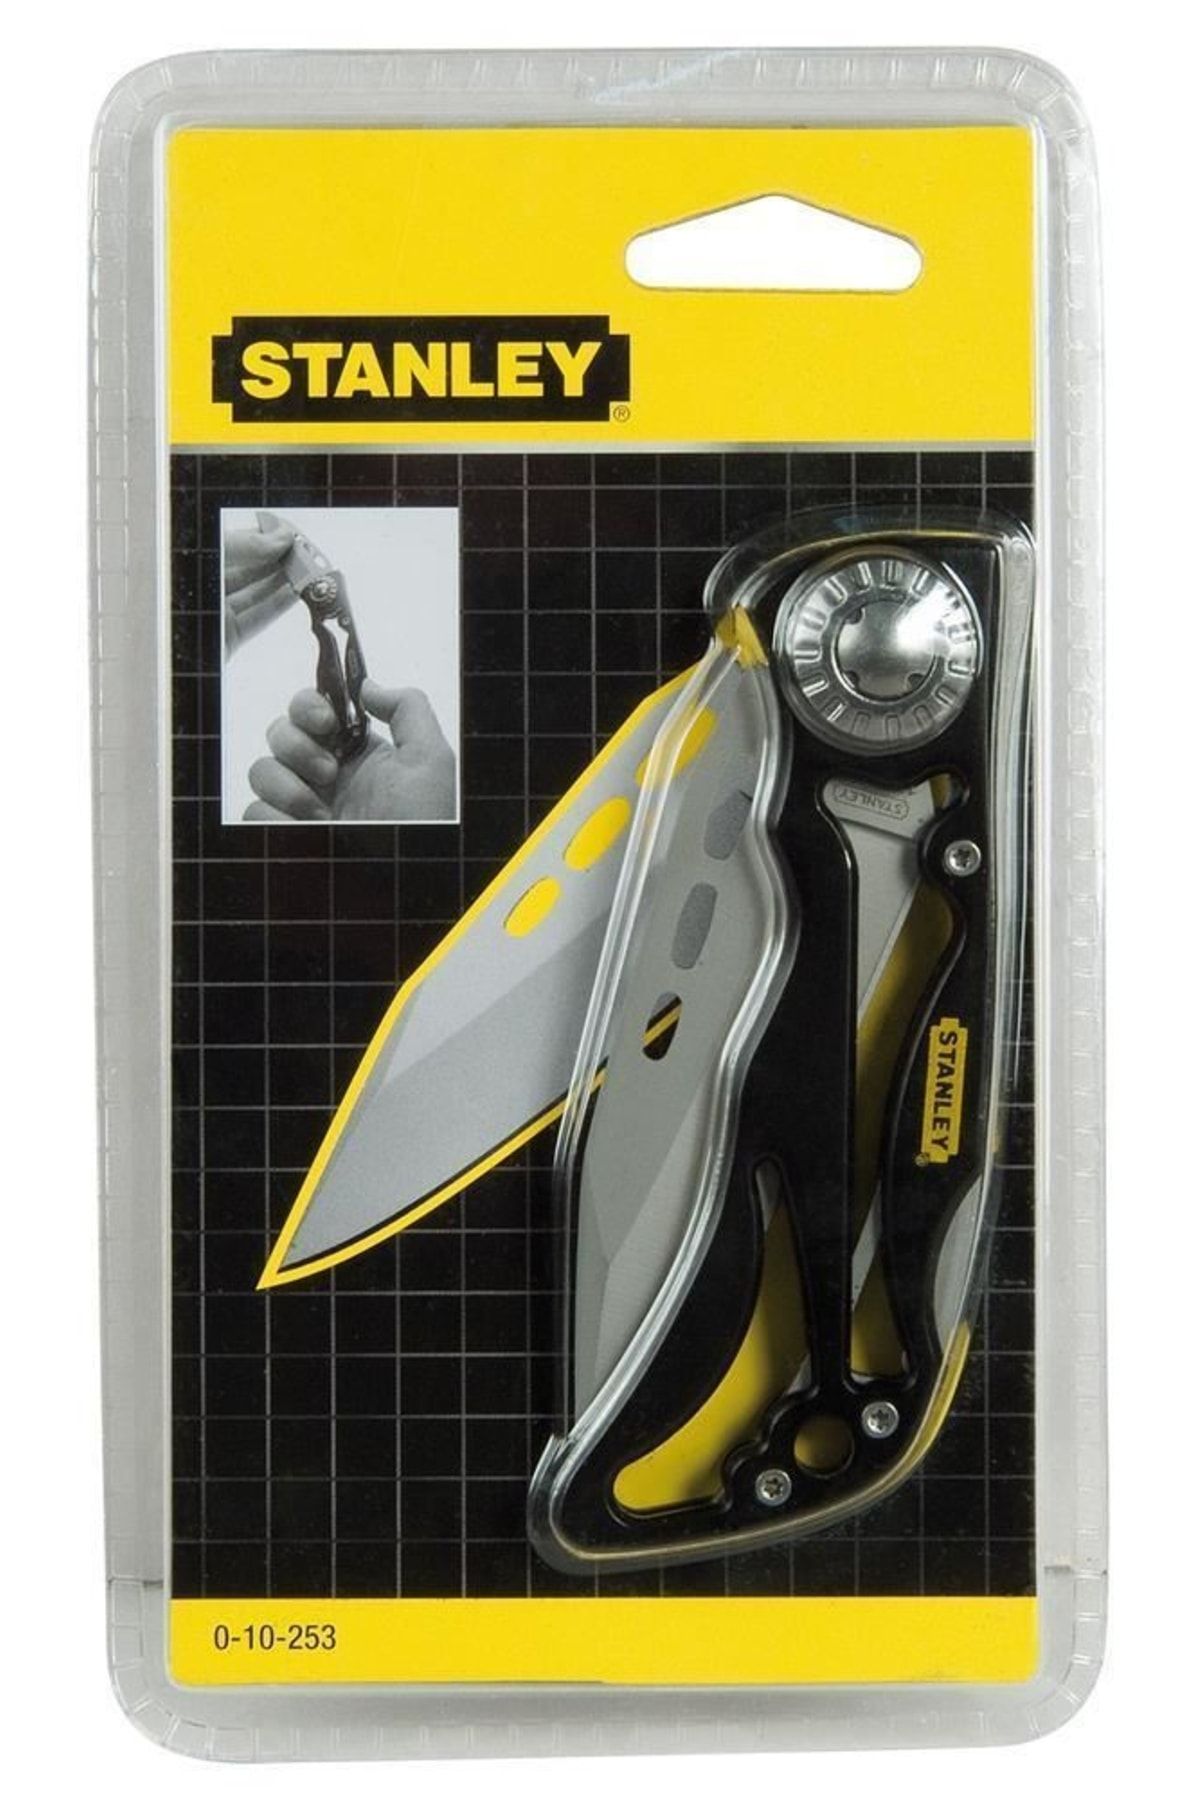 Stanley St010253 Iskelet Kilitli Bıçak